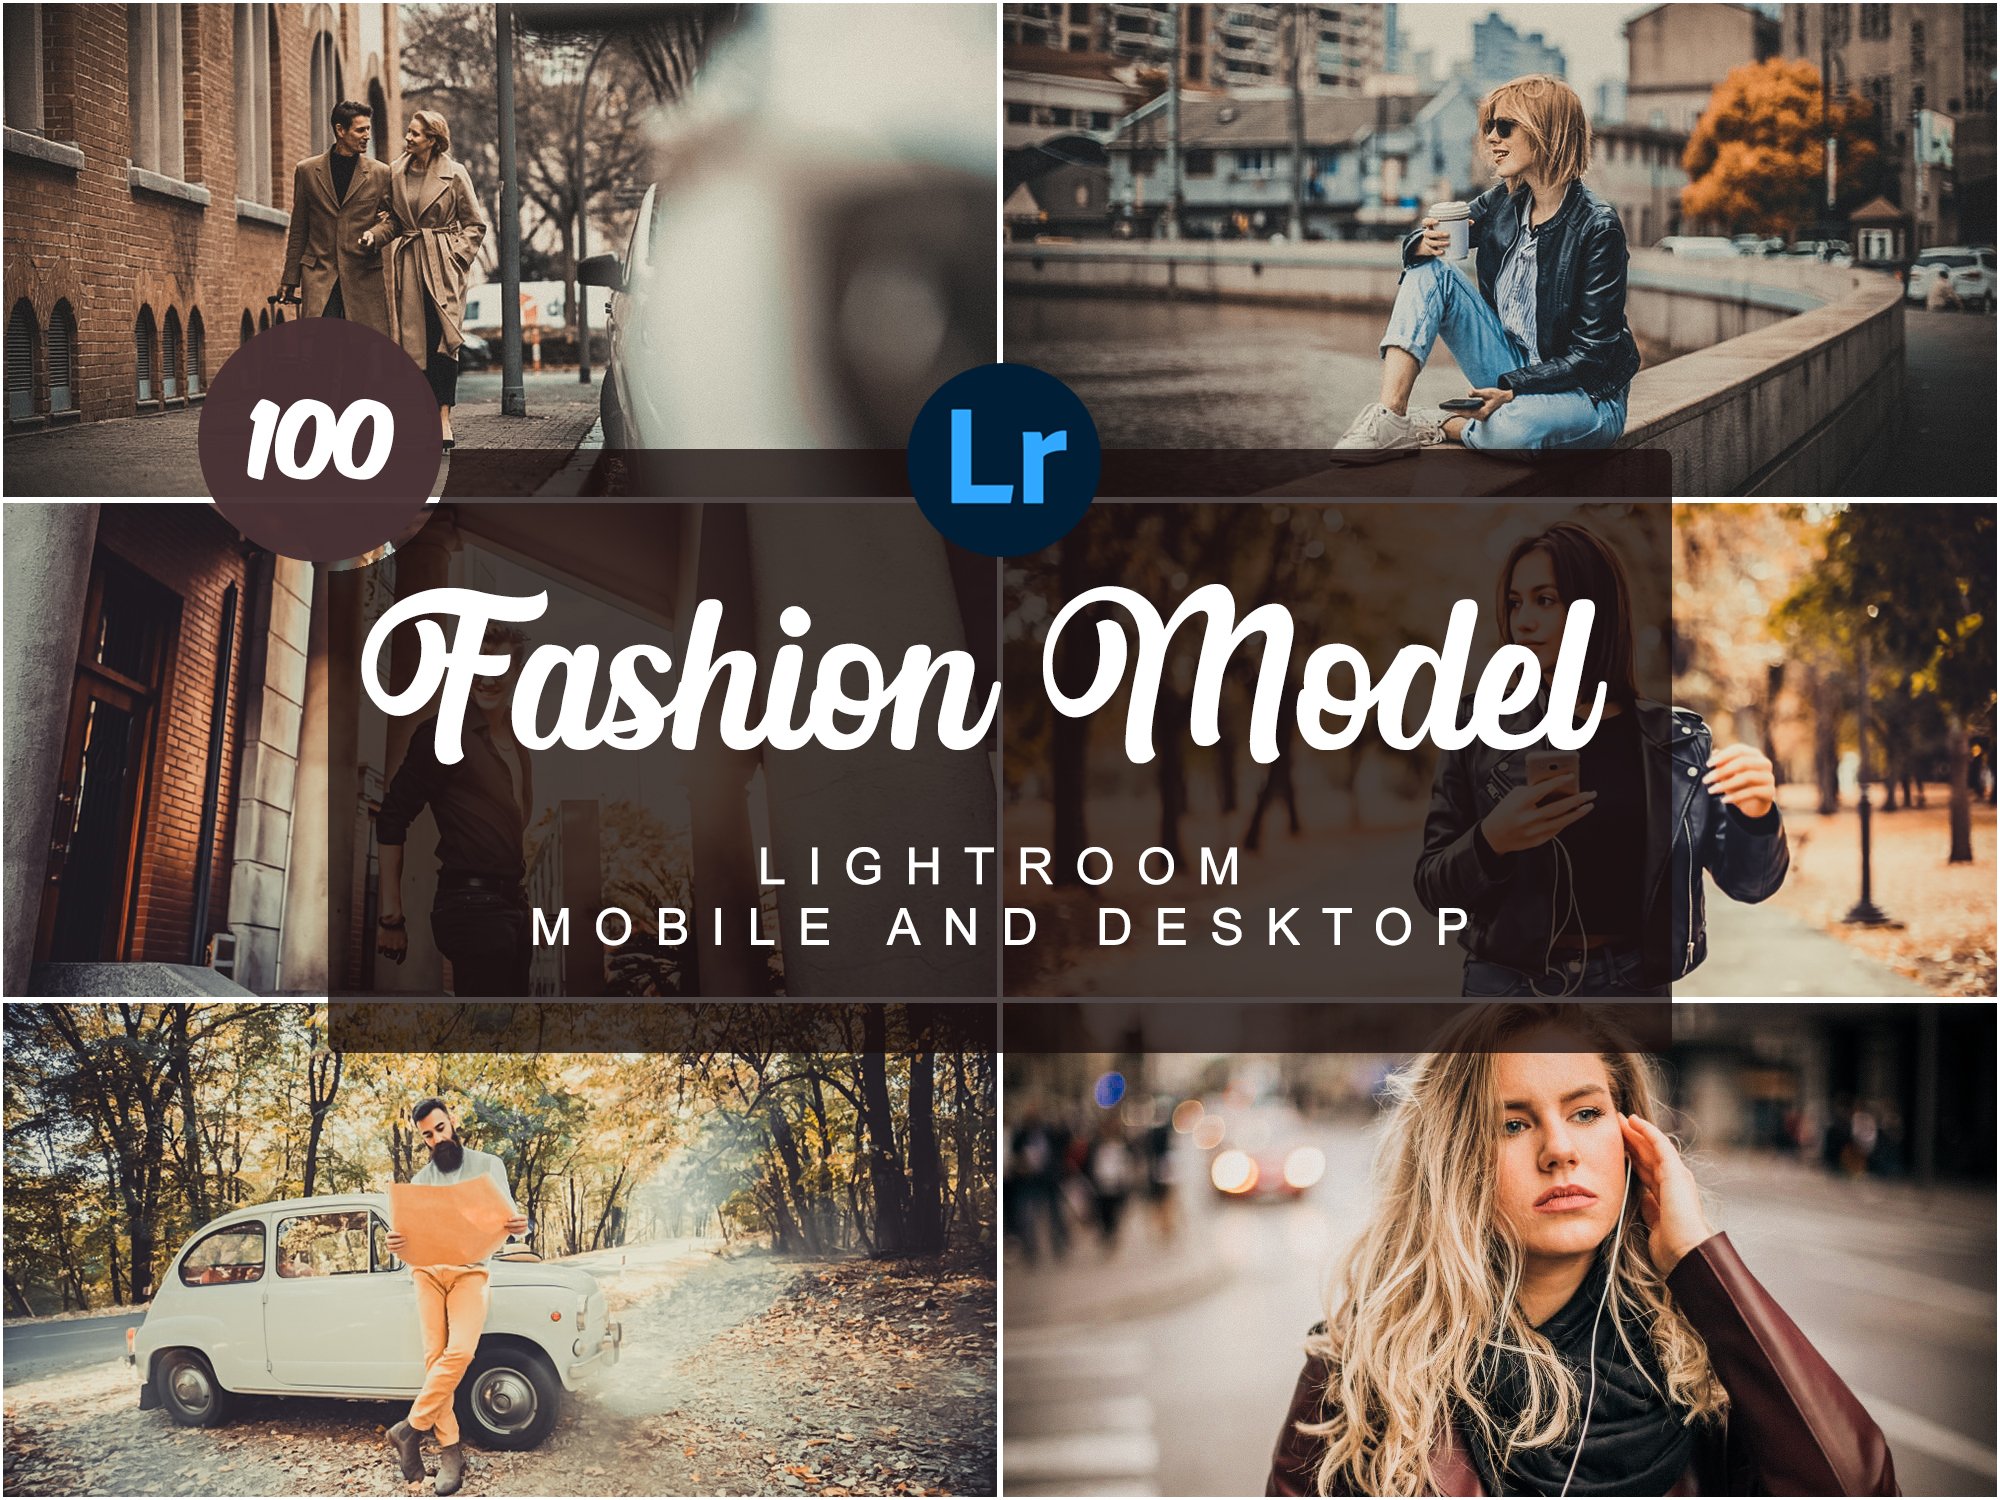 Fashion Model Mobile Desktop PRESETScover image.